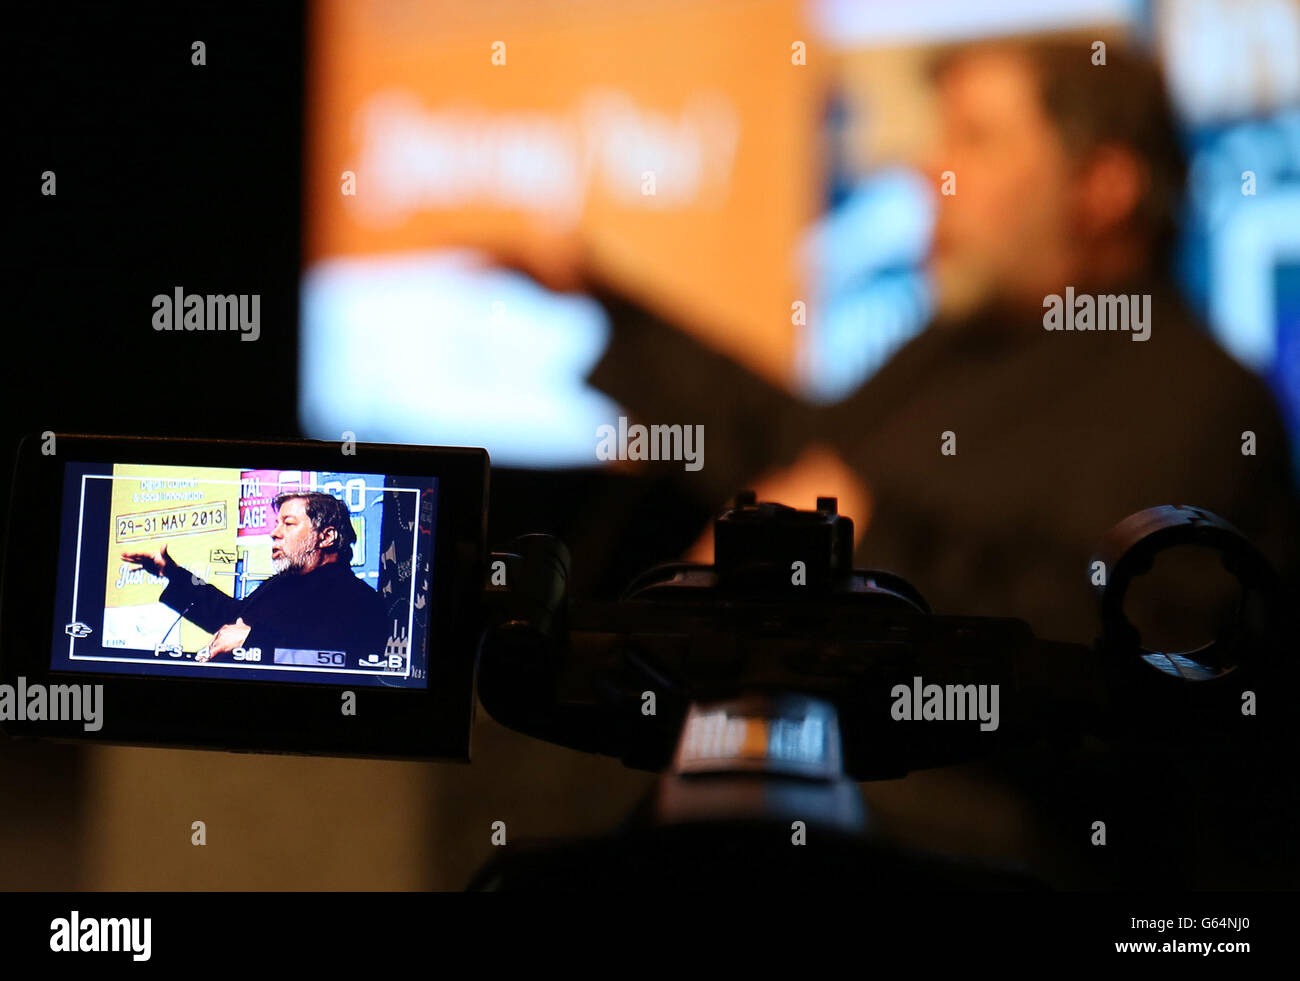 Steve Wozniak, Mitbegründer eines US-Technologie-Riesen Apple, der seine irischen Tochtergesellschaften verwendet, um seine Steuerrechnung zu senken, sagte auf dem Millennium Forum in Londonderry, dass große Unternehmen wie der "kleine Kerl" behandelt werden sollten. Stockfoto